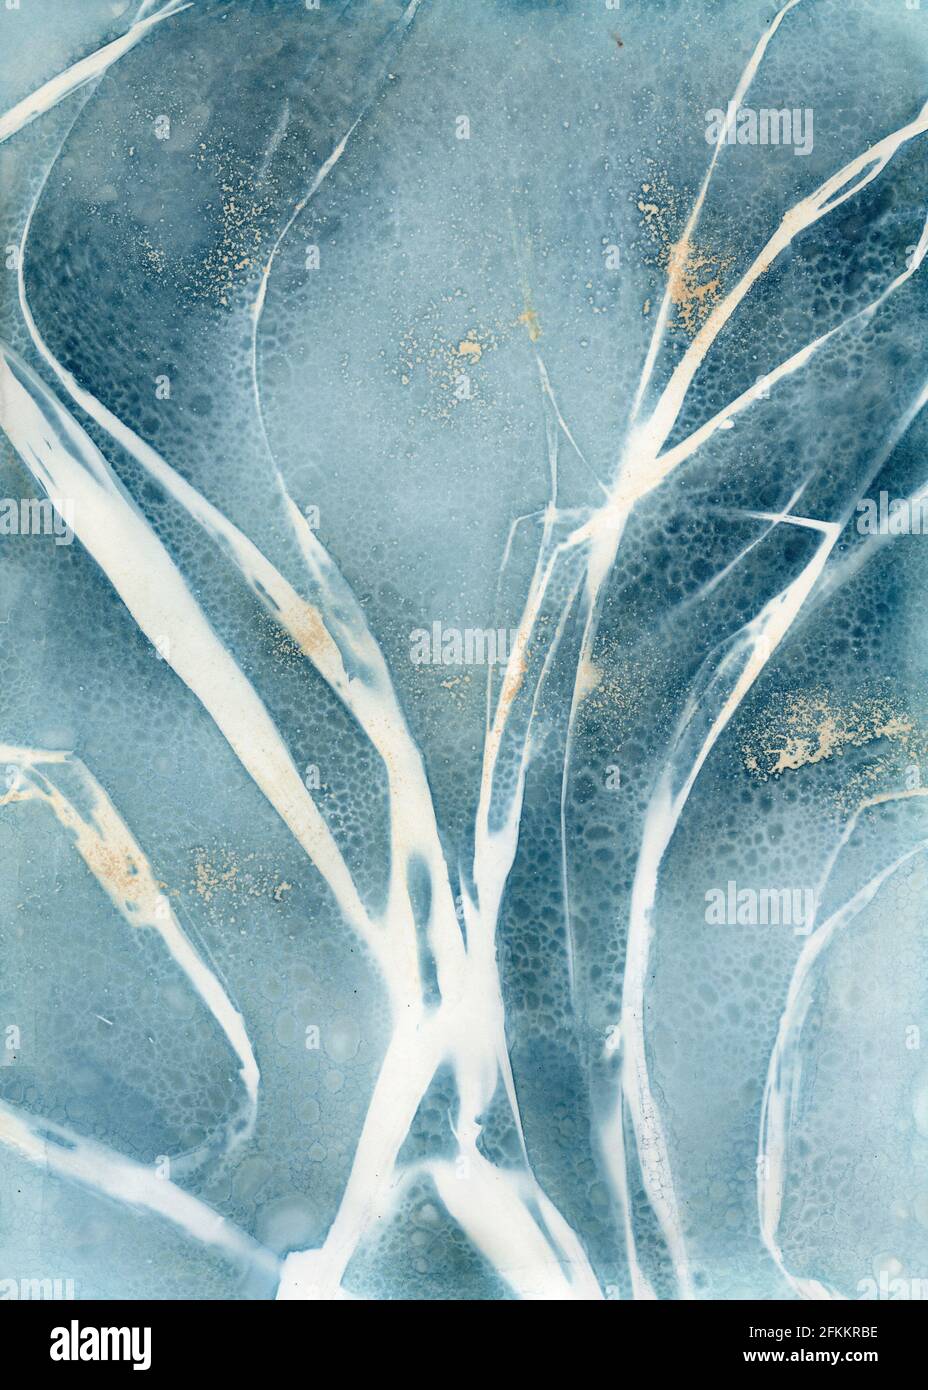 Le cyanotype moderne imprime des images à l'aide de la méthode du cyanotype humide, des feuilles de gladiola séchées et du curcuma Banque D'Images